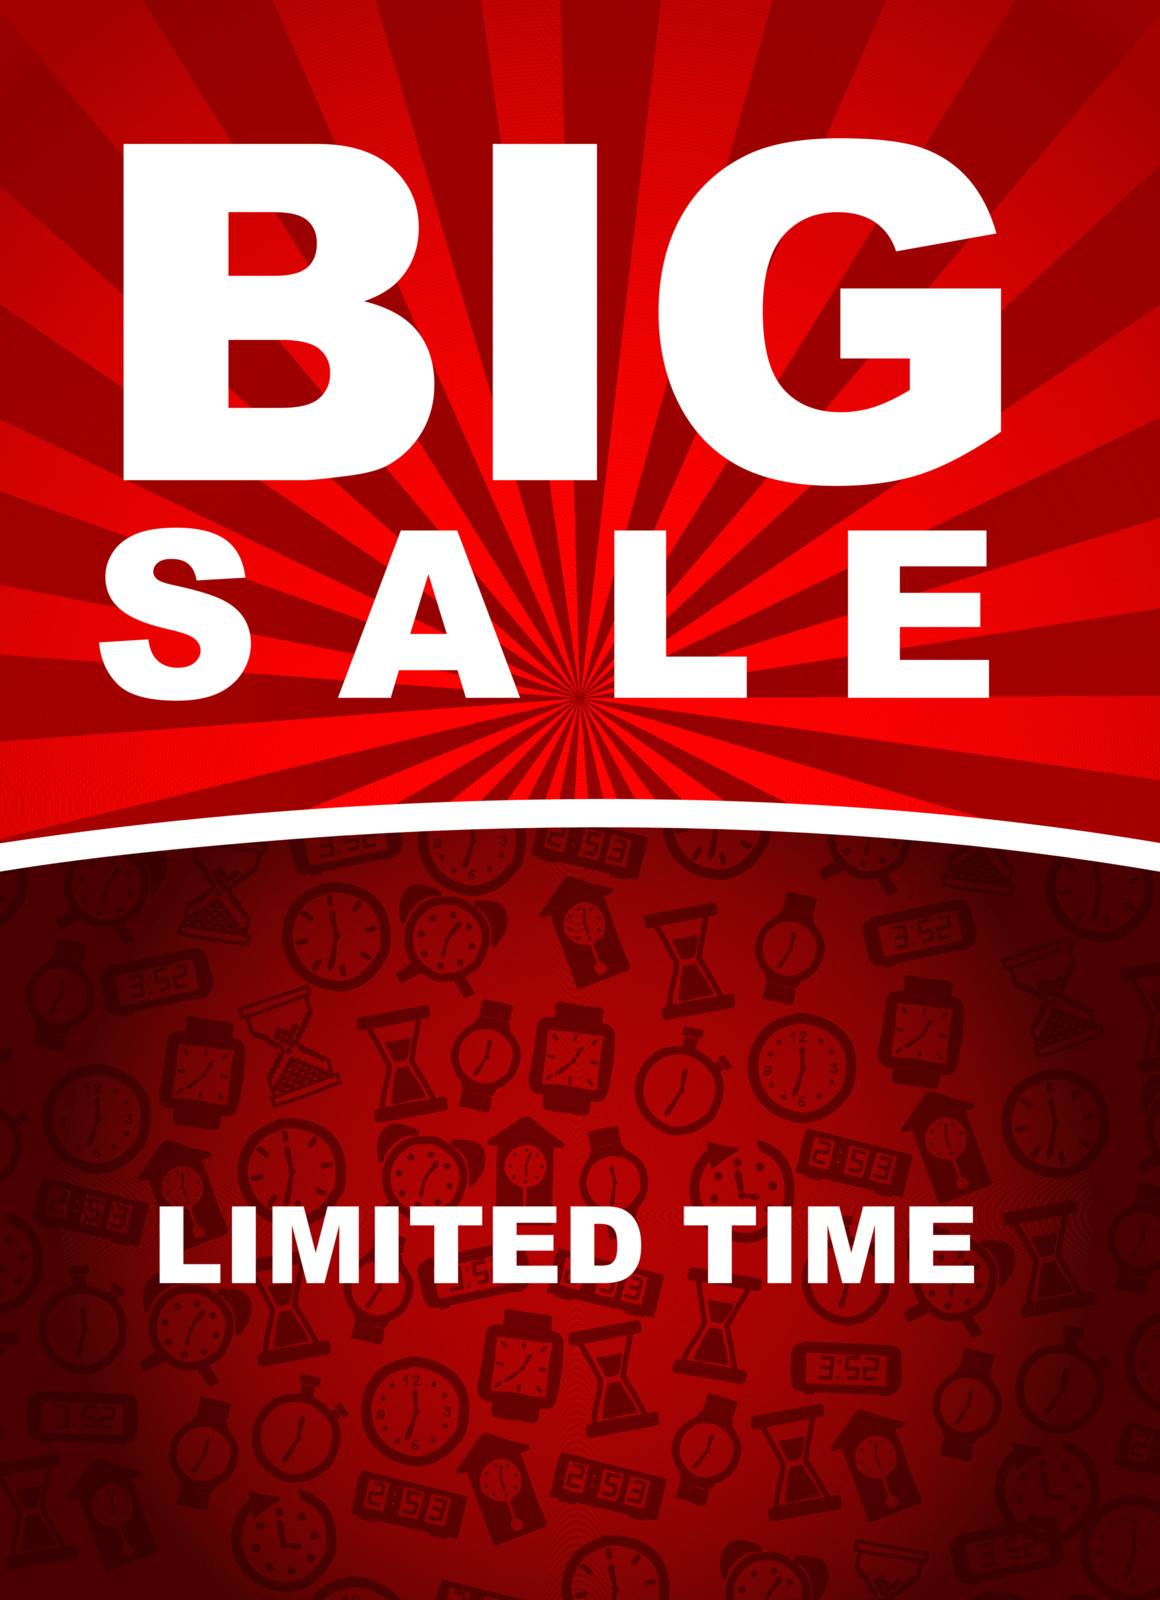 Big sale over red background vector illustration